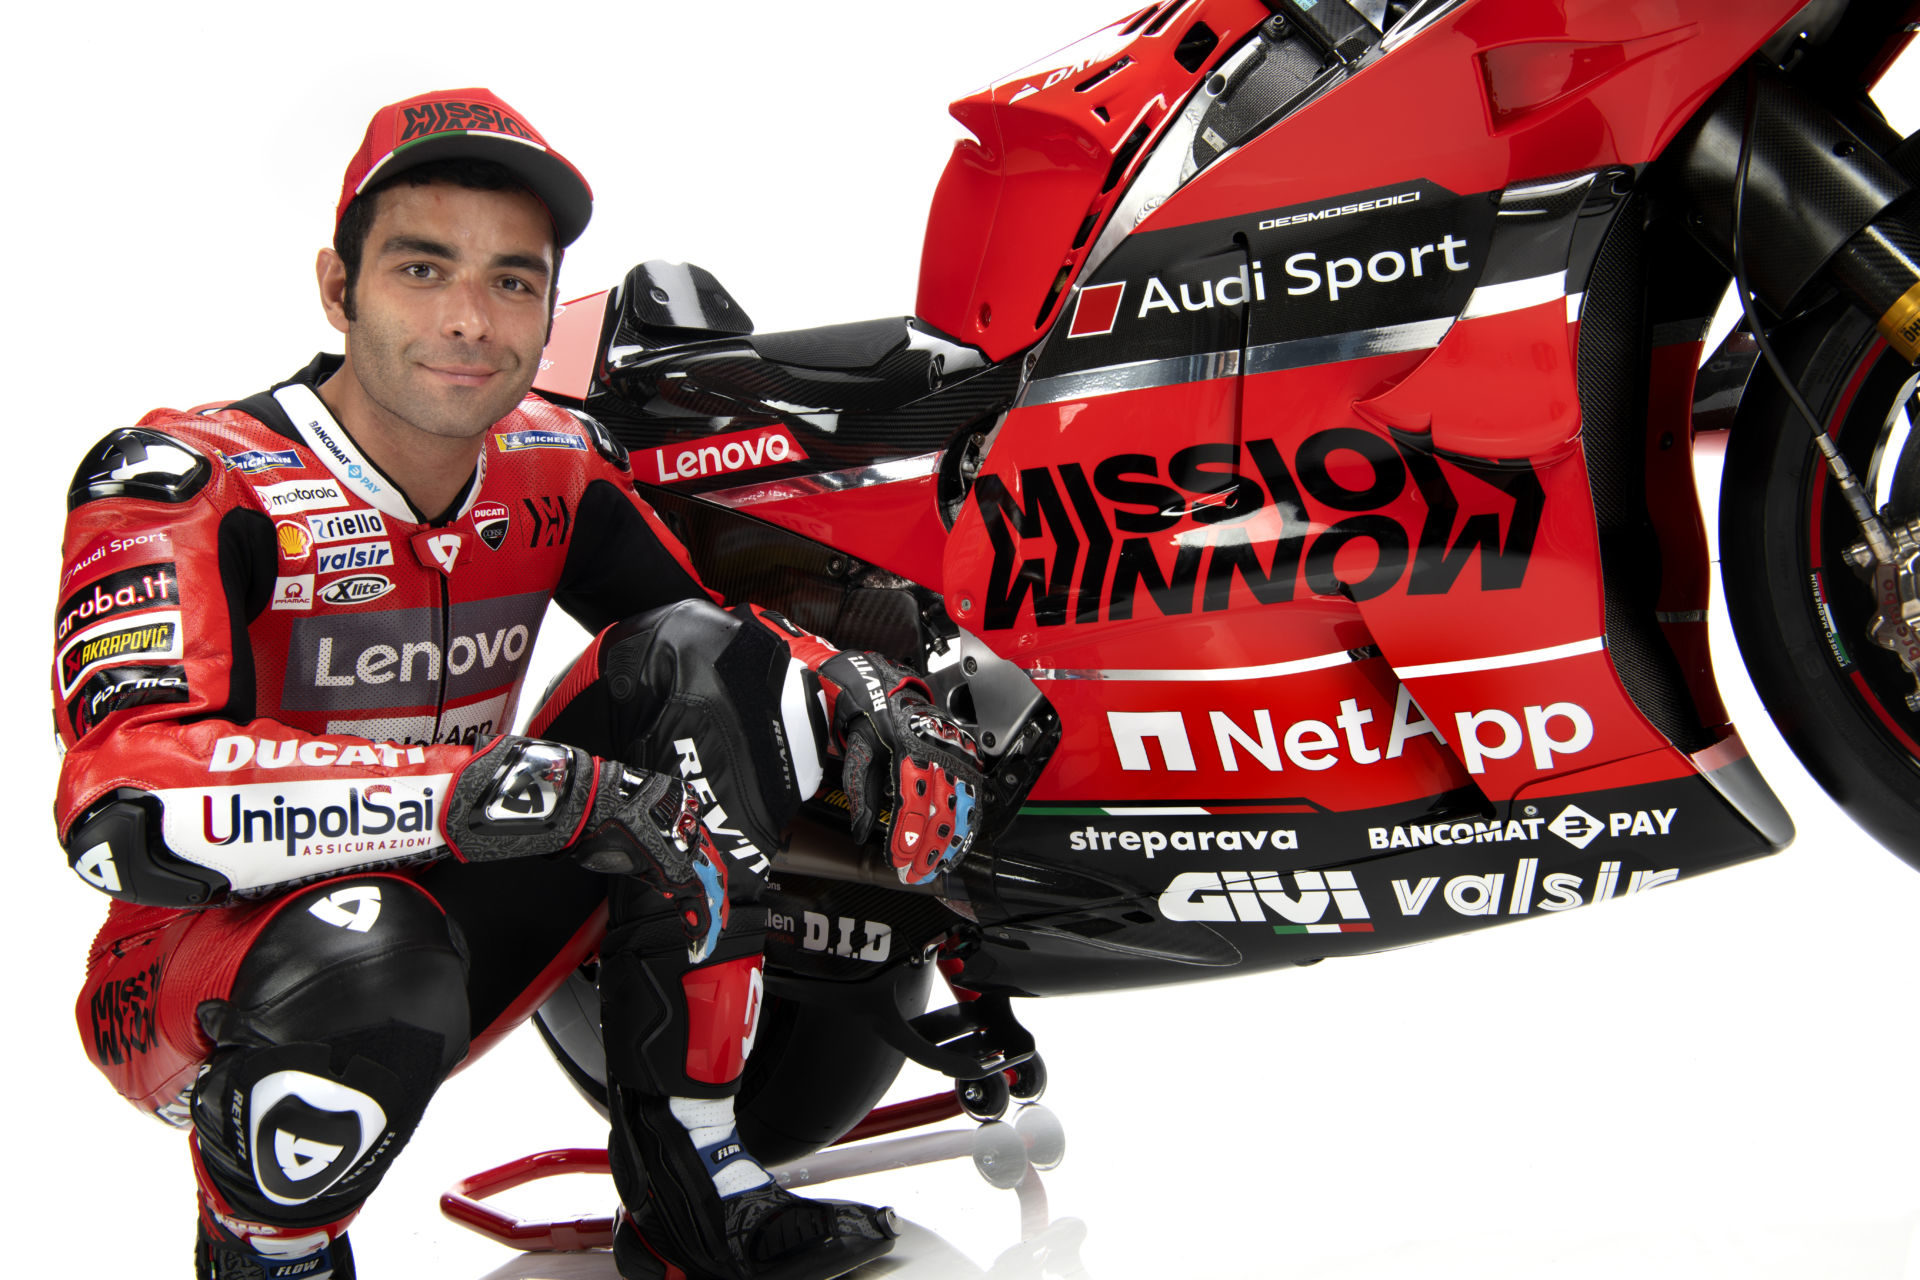 Danilo Petrucci with his 2020 Mission Winnow Ducati Desmosedici GP20 MotoGP racebike. Photo courtesy of Ducati.